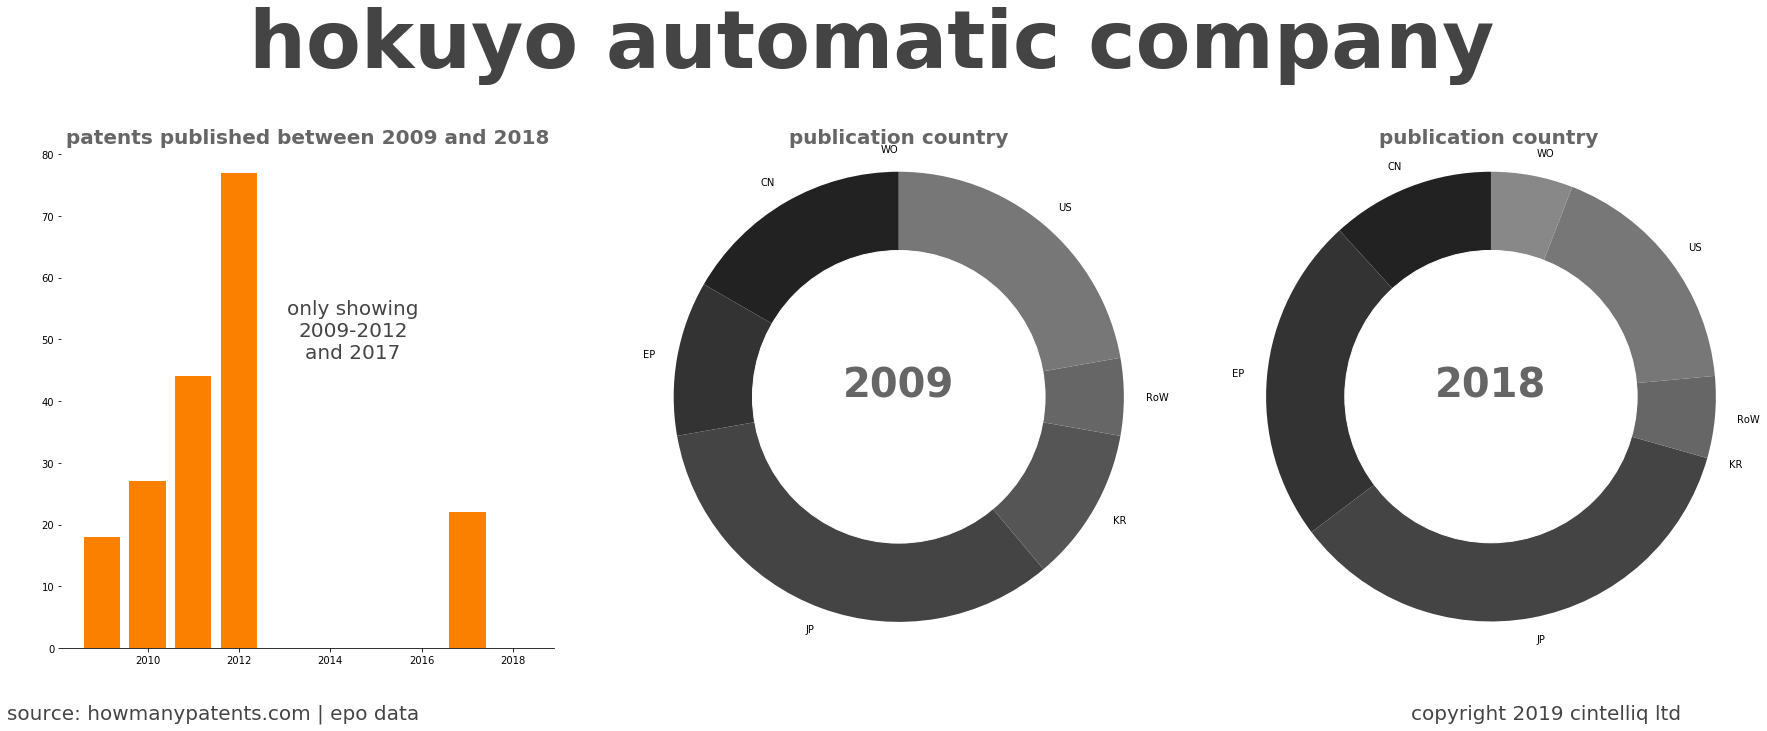 summary of patents for Hokuyo Automatic Company